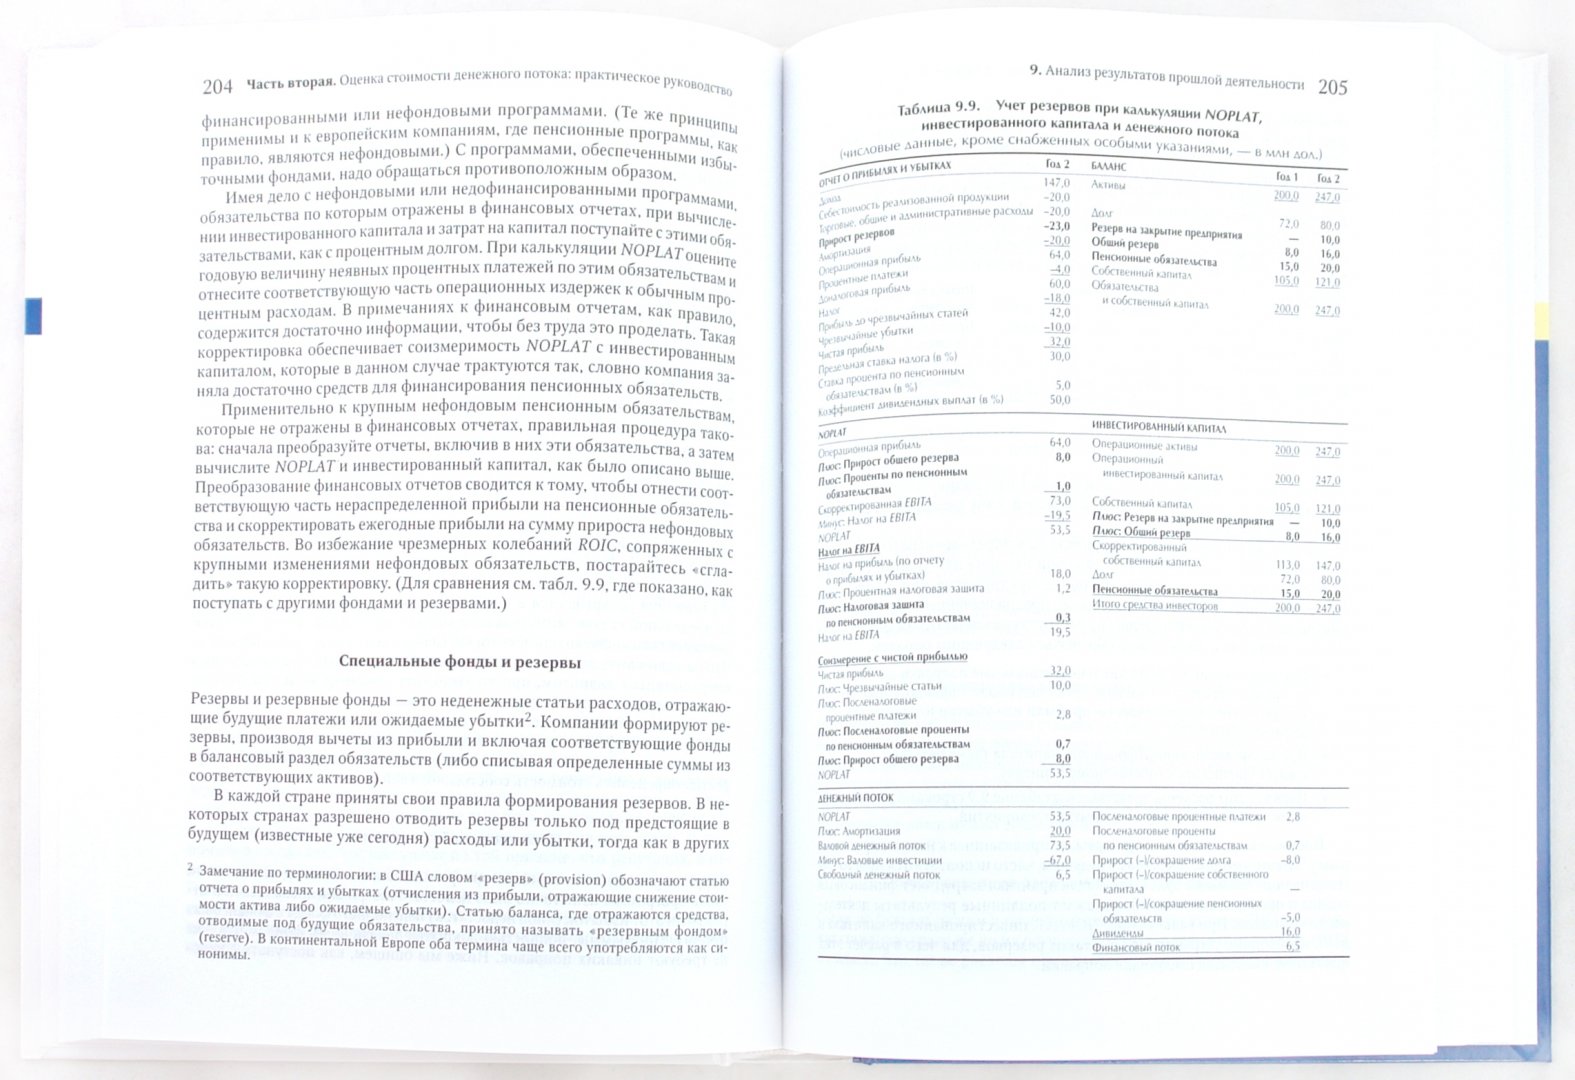 Иллюстрация 1 из 10 для Стоимость компаний: оценка и управление - Коупленд, Коллер, Муррин | Лабиринт - книги. Источник: Лабиринт